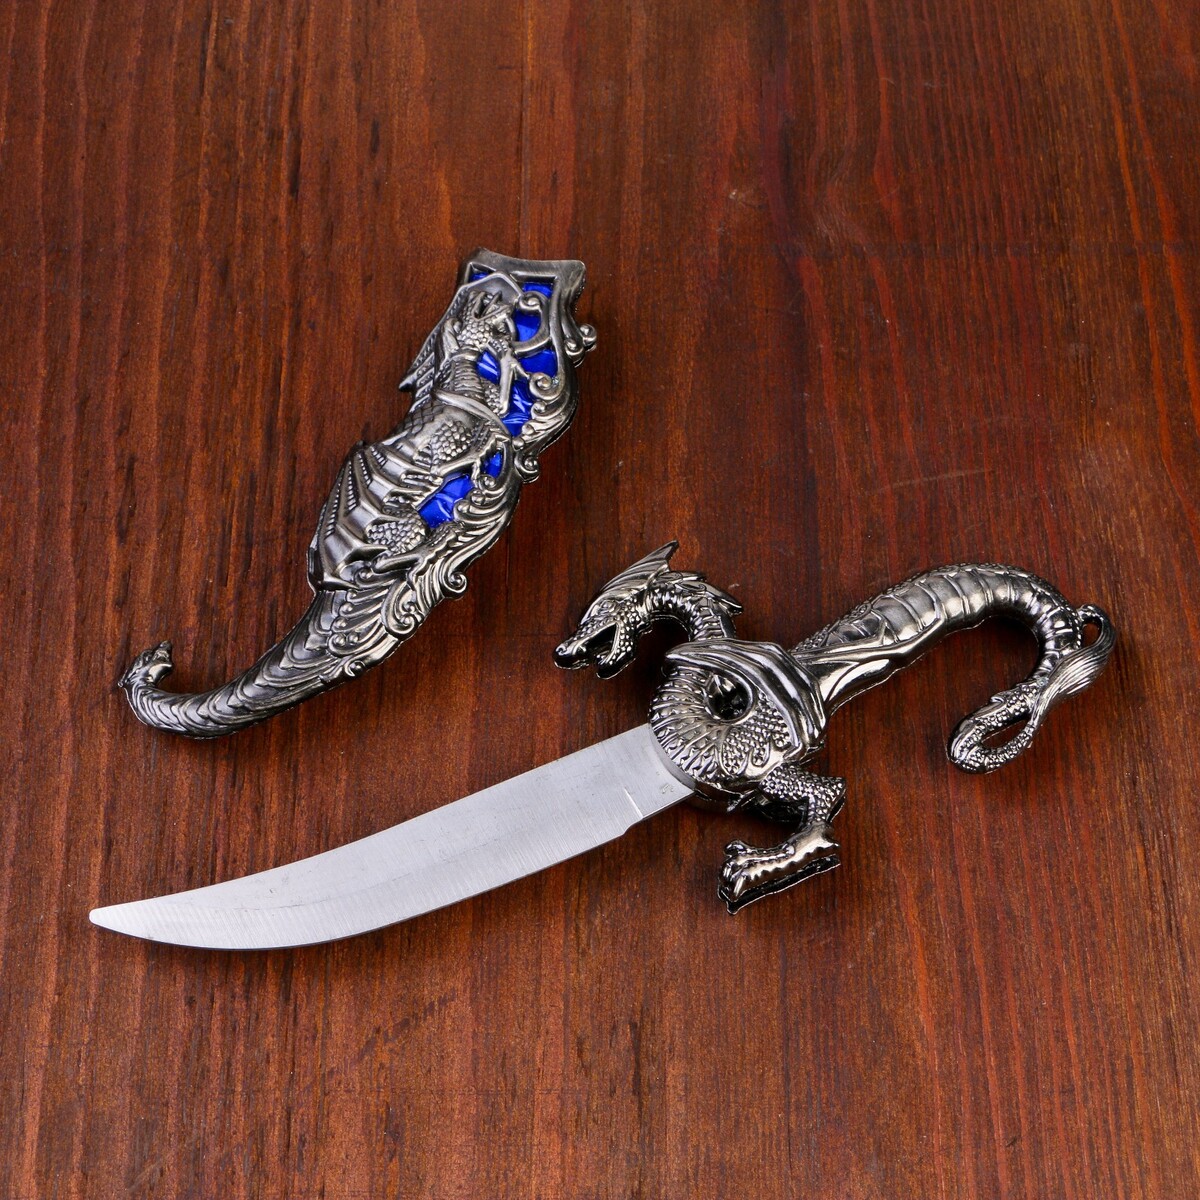 Сувенирный нож, 24,5 см резные ножны, дракон на рукояти дракон по вызову